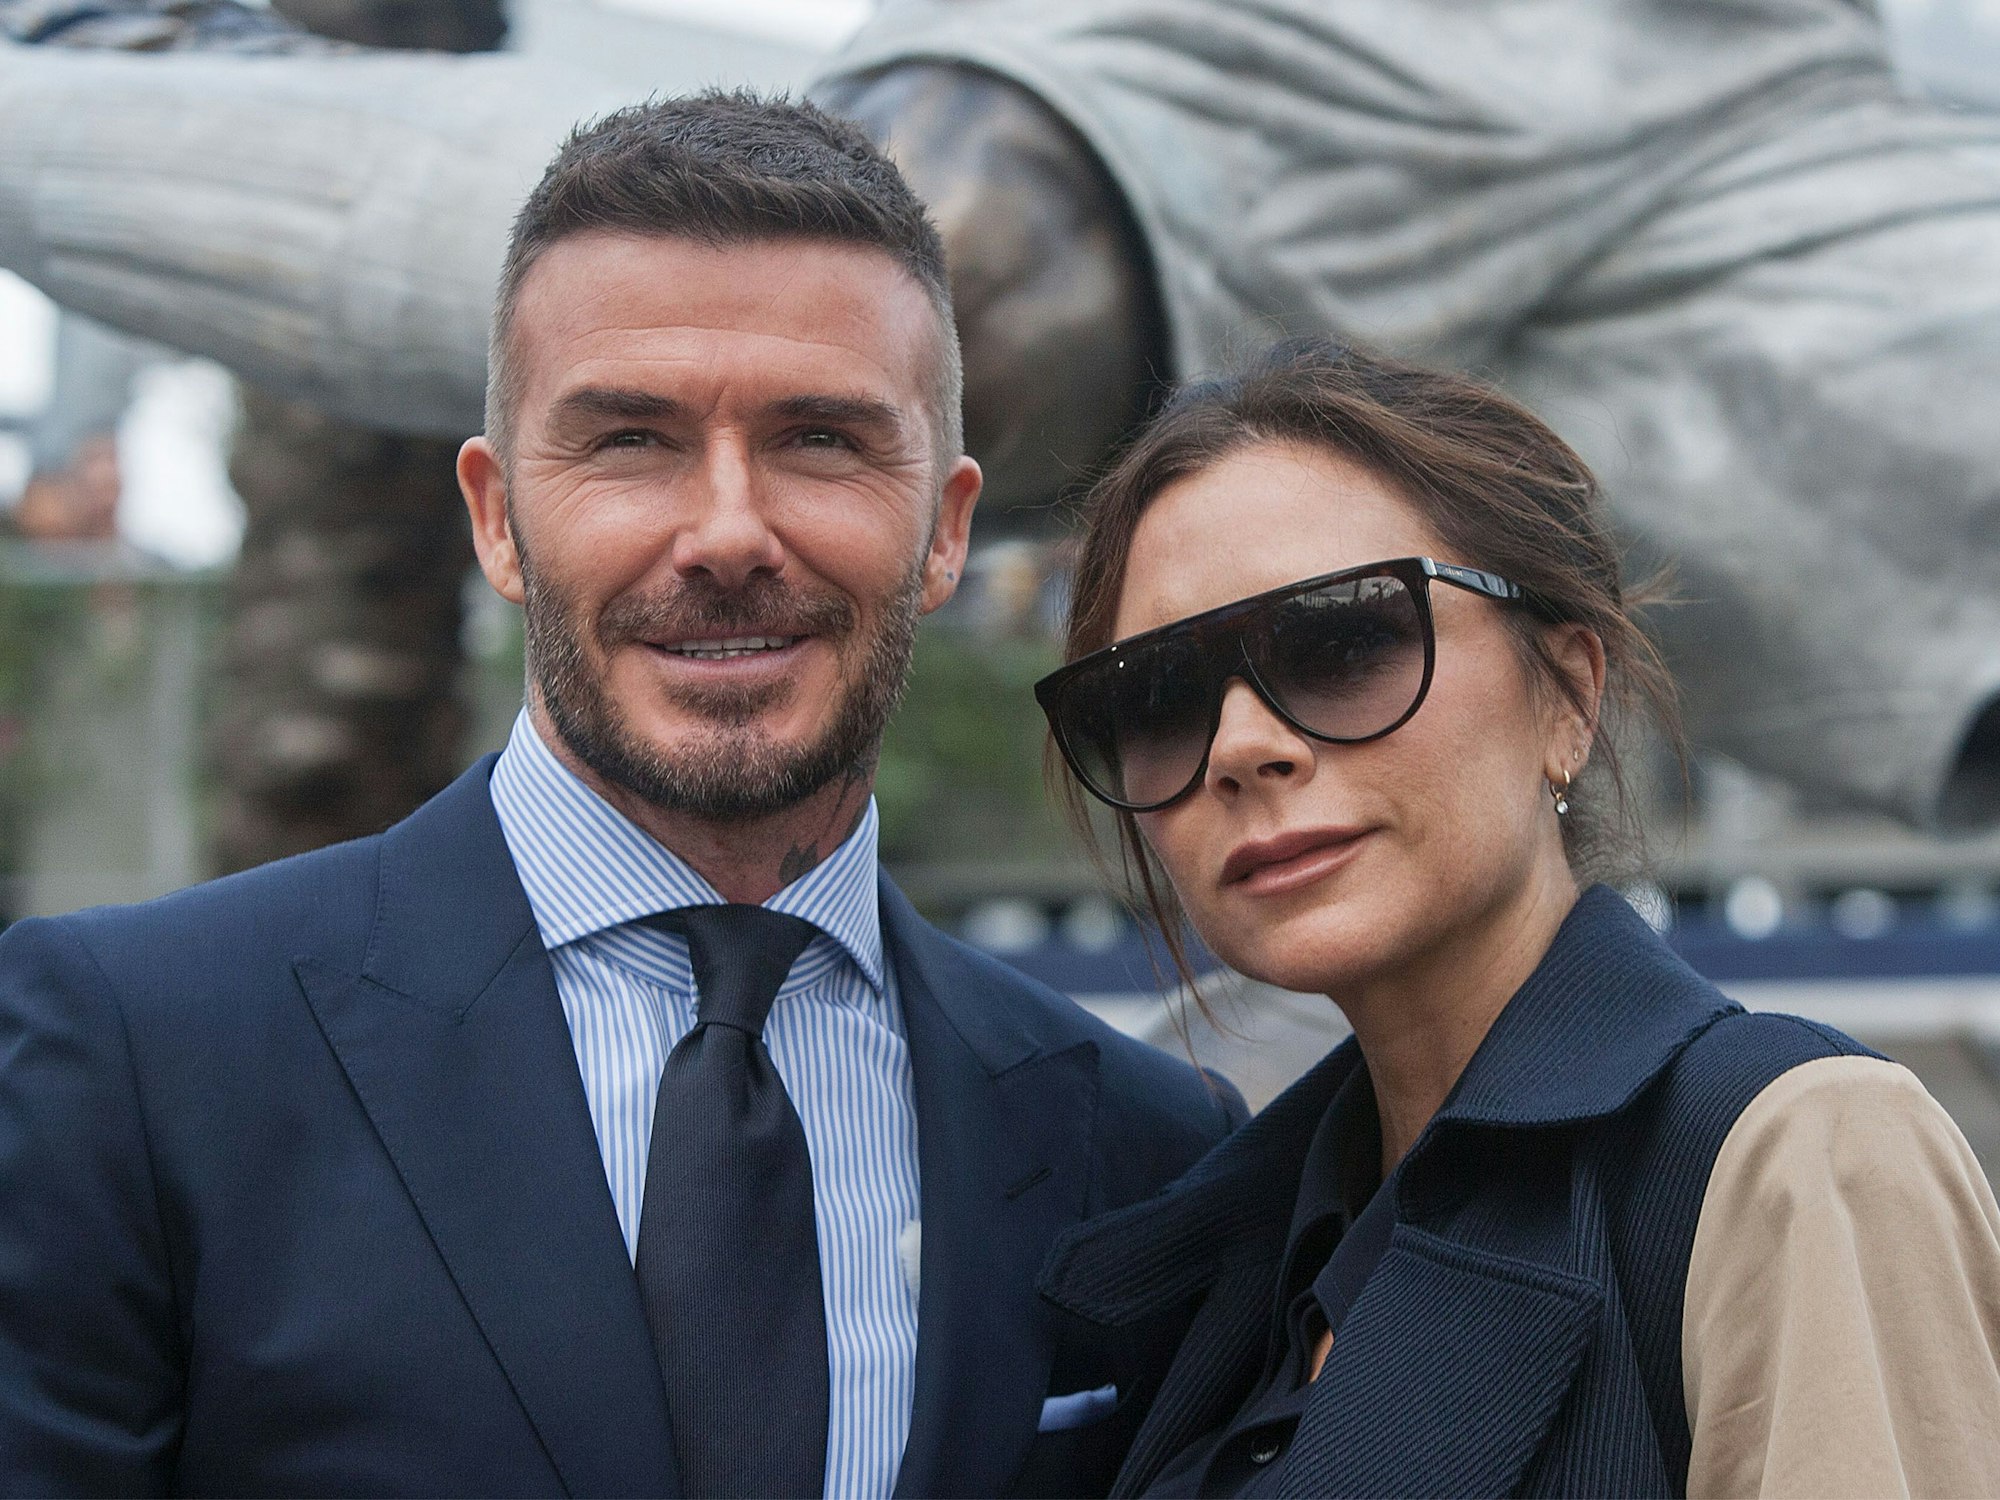 David Beckham, ehemaliger britischer Fußballspieler, und seine Frau Victoria Beckham, Designerin, während der Enthüllungszeremonie einer von Davids Statuen im „Dignity Health Sports Park“ der LA Galaxy.